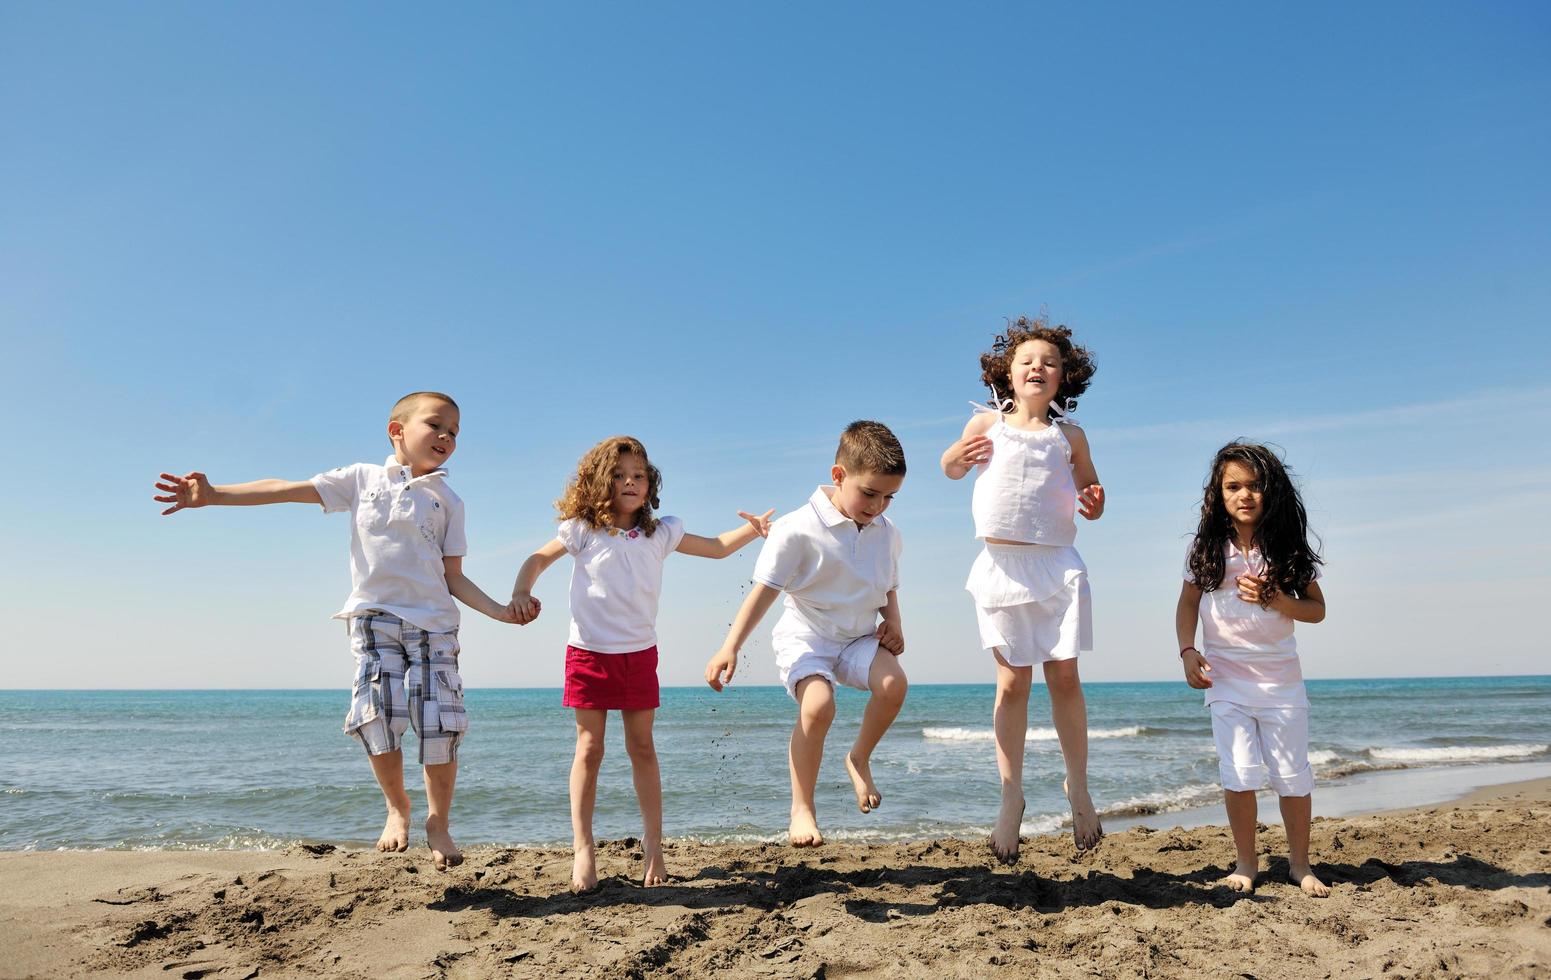 groupe d'enfants heureux jouant sur la plage photo